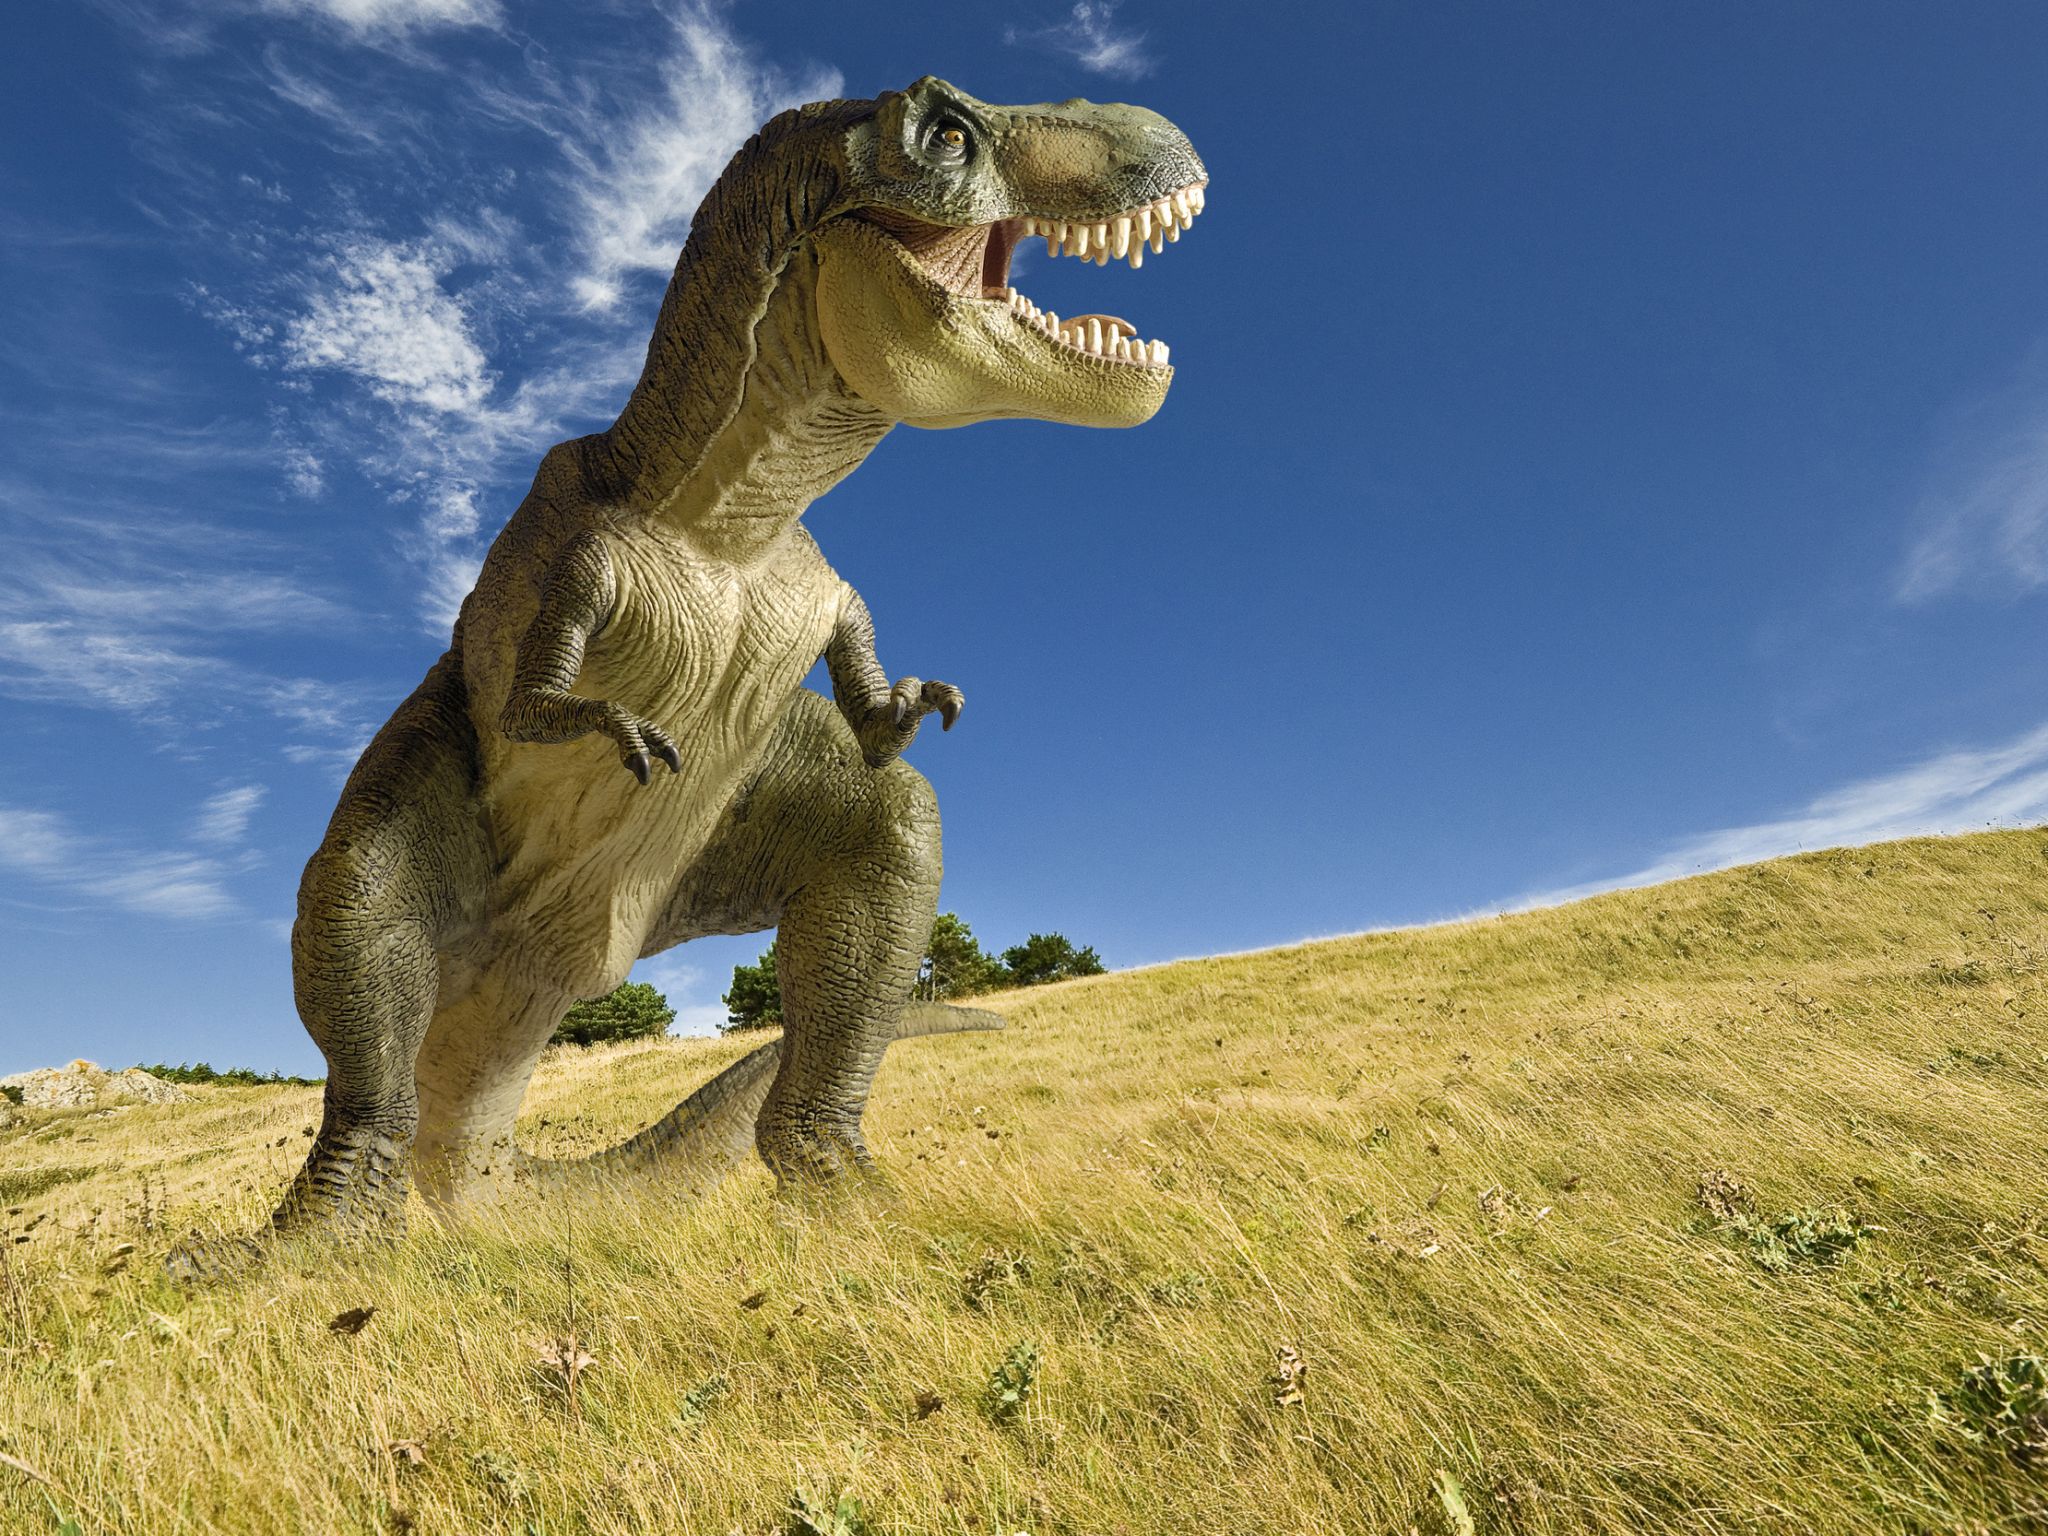 le tyrannosaure, redoutable prédateur de la fin du crétacé, il y a 70 millions d’années